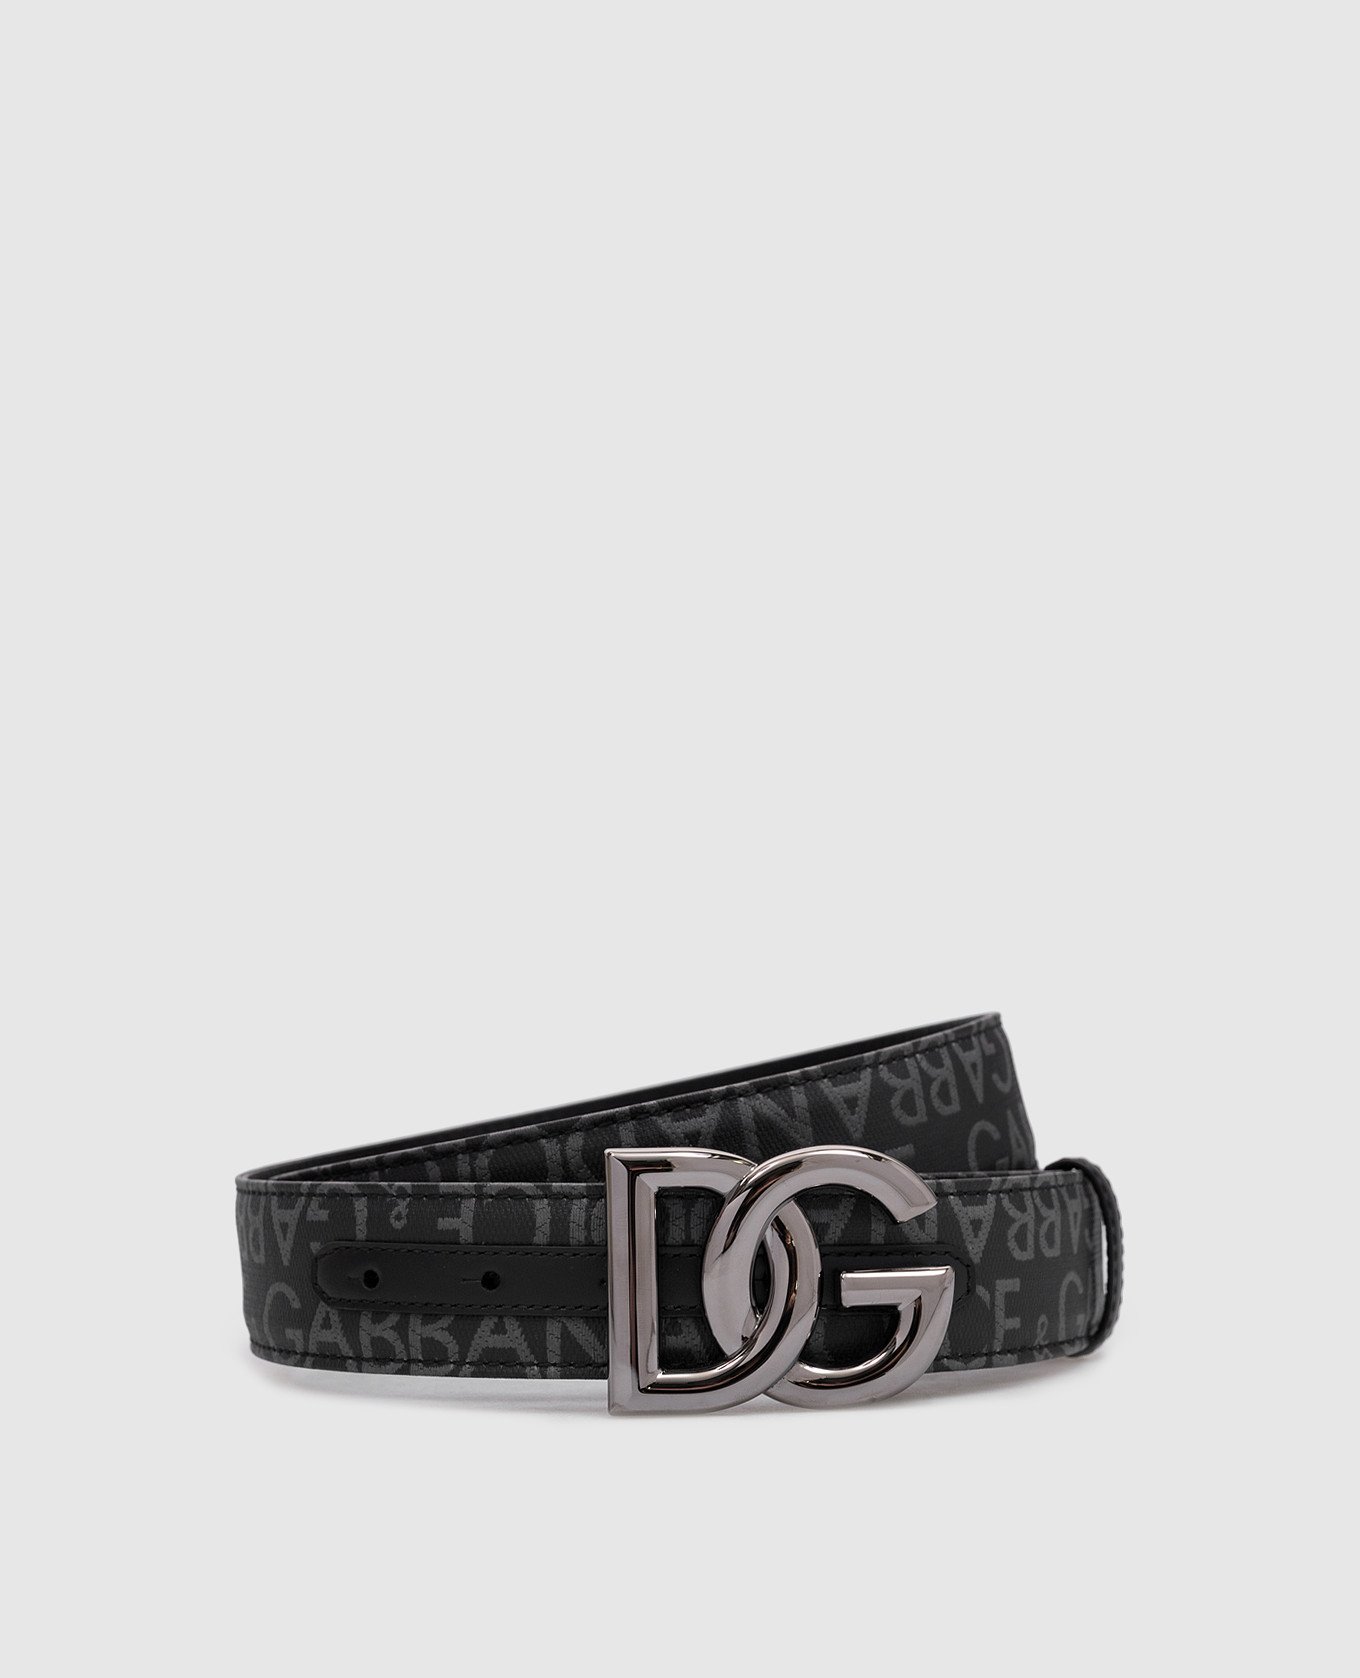 Gray belt in logo pattern